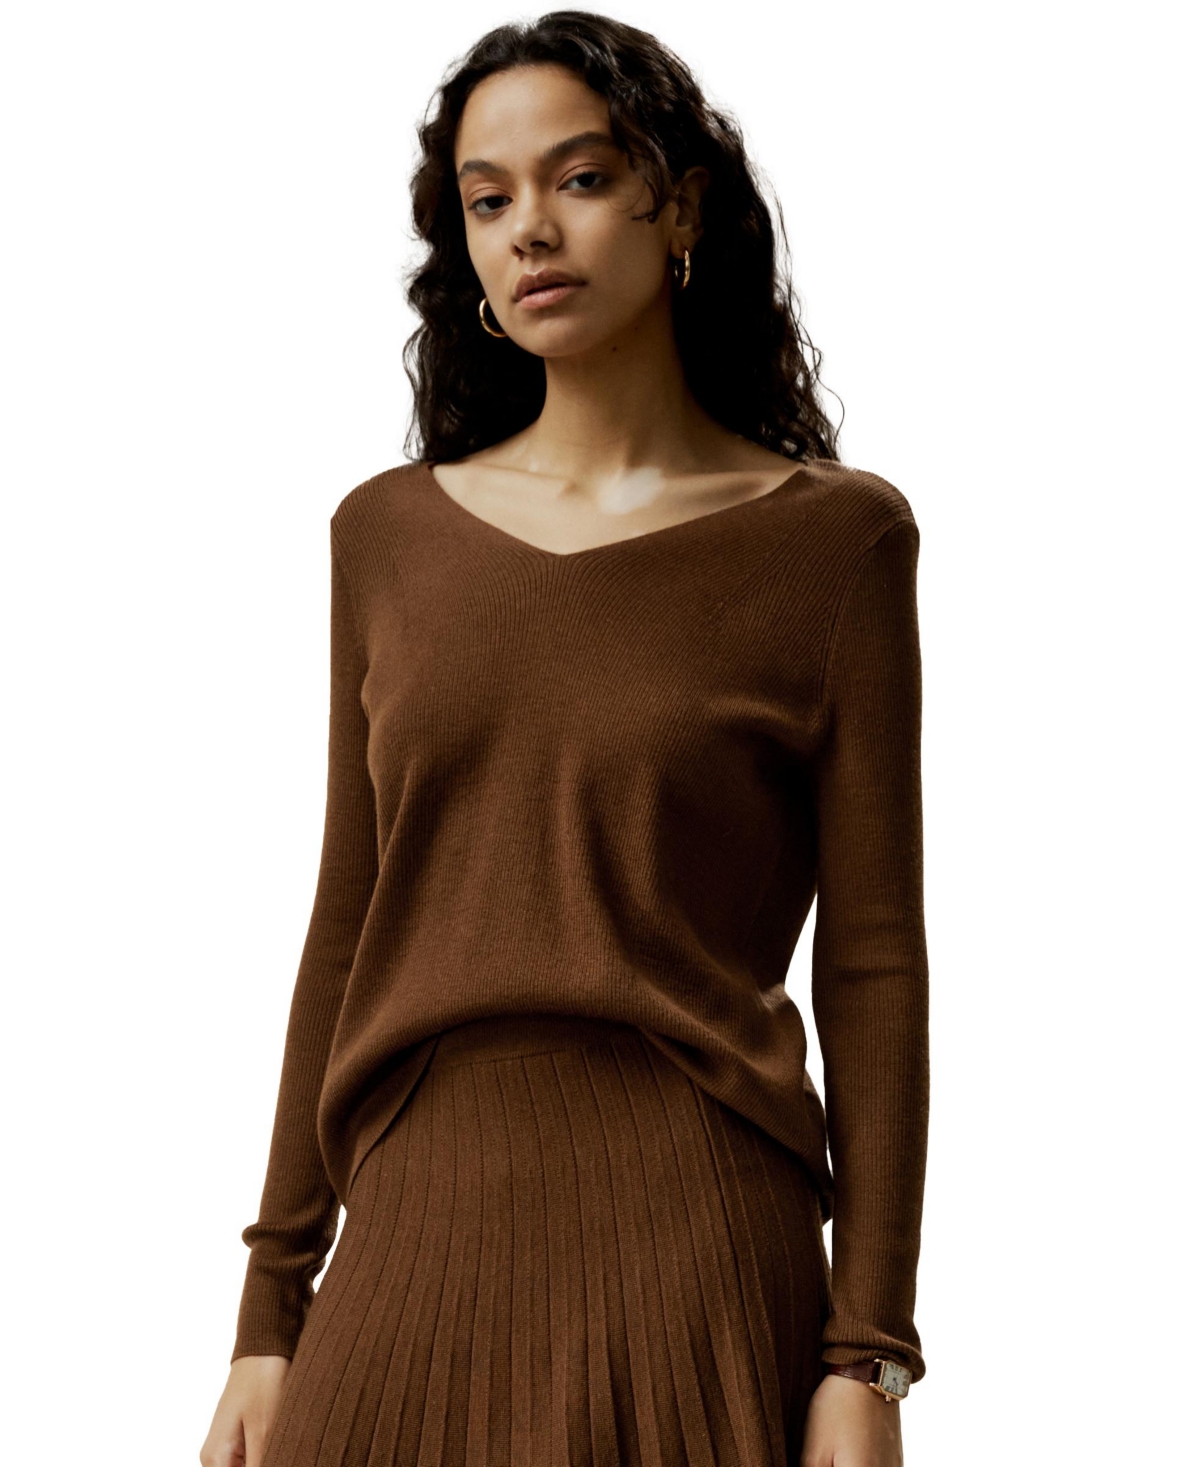 Women's V-neck Ultra-fine Merino Wool Sweater for Women - Black